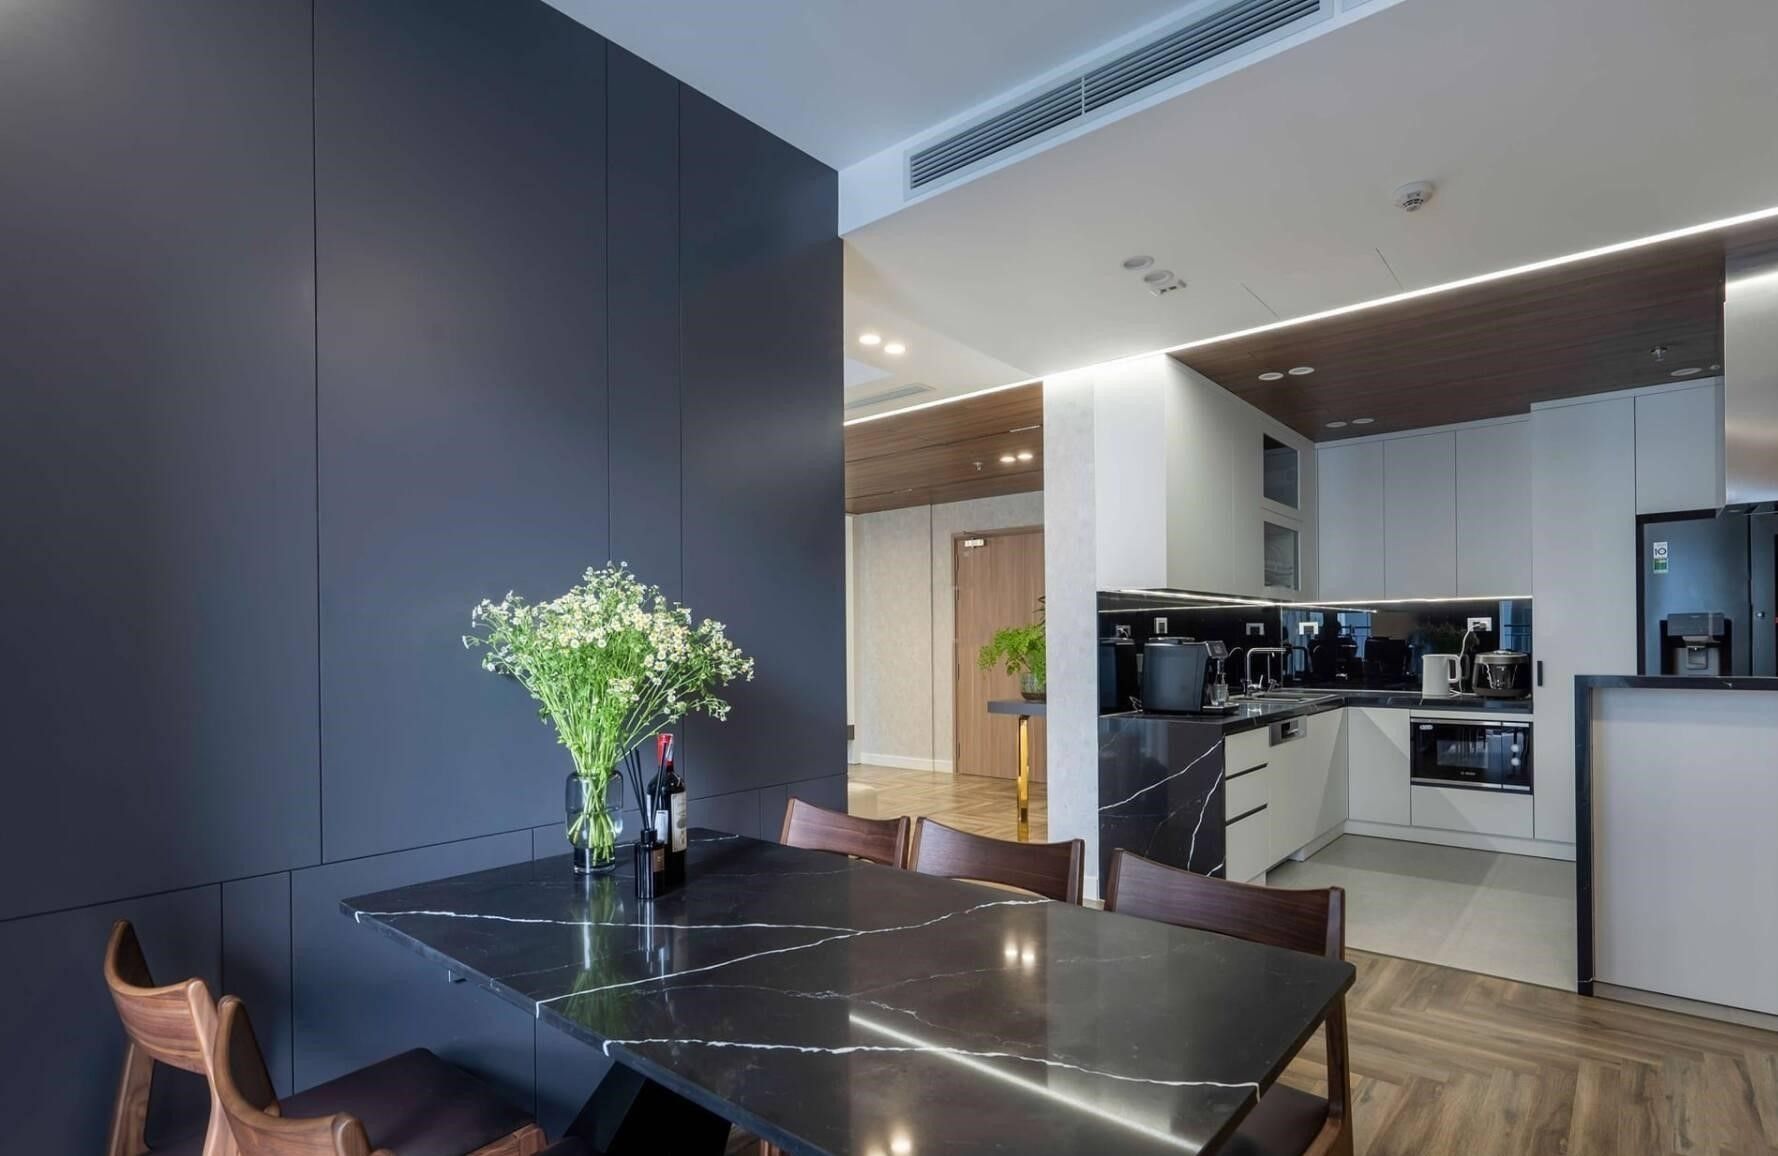 "Mạnh dạn" đập thông 2 căn hộ Vinhomes Smart City để làm "tổ ấm" hiện đại, khác biệt: Học hỏi cách vợ chồng Gen Z thiết kế nội thất